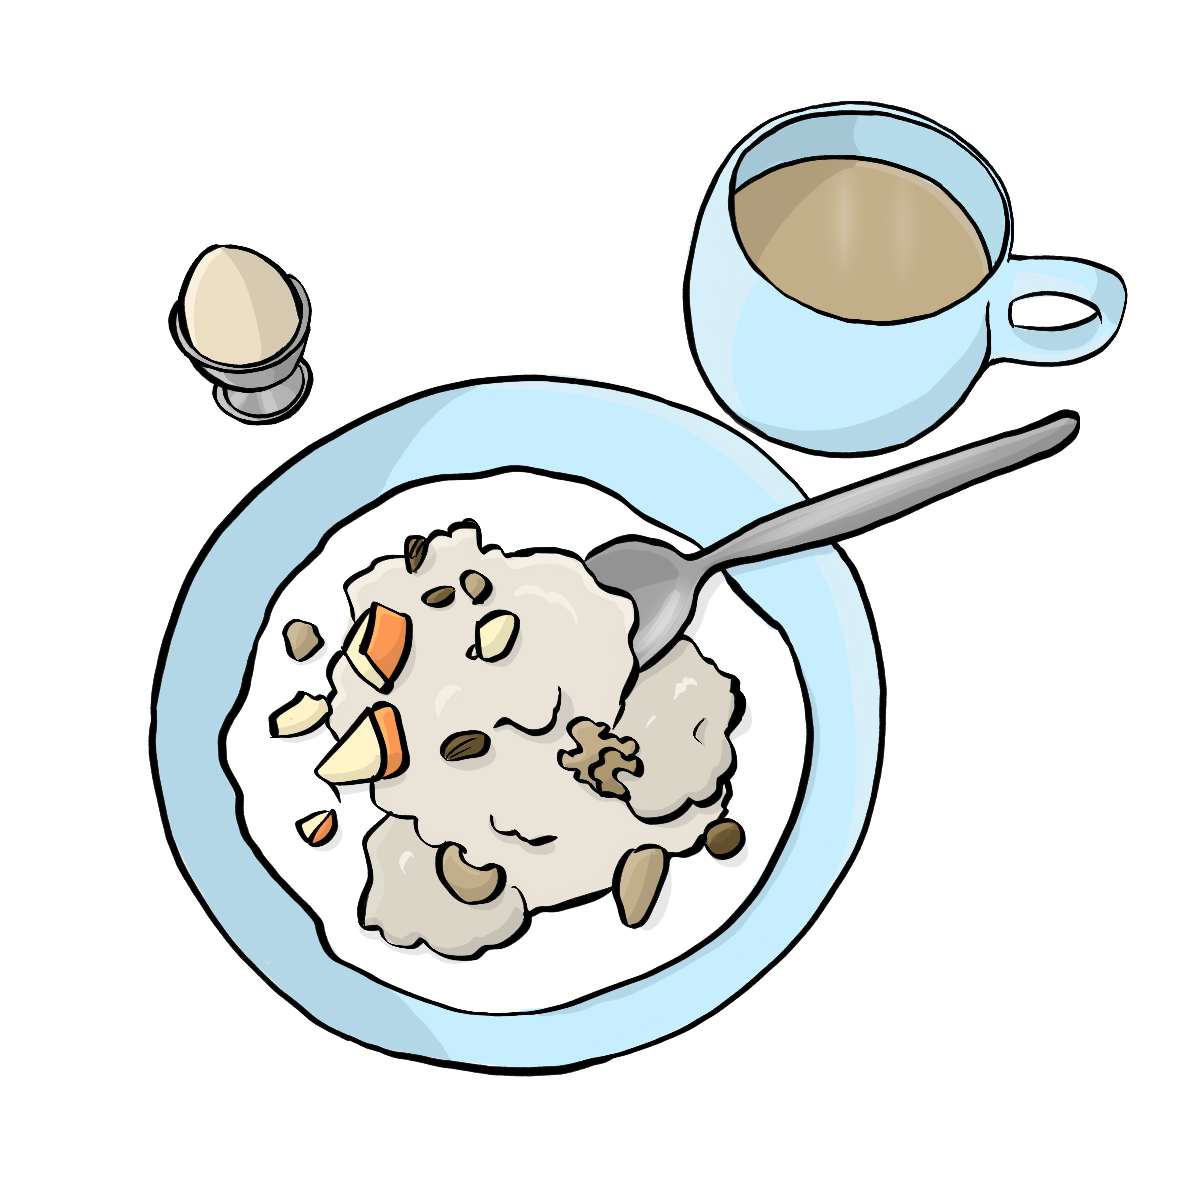 Ein Teller mit Müsli, eine Tasse Kaffee und ein Ei im Eierbecher.